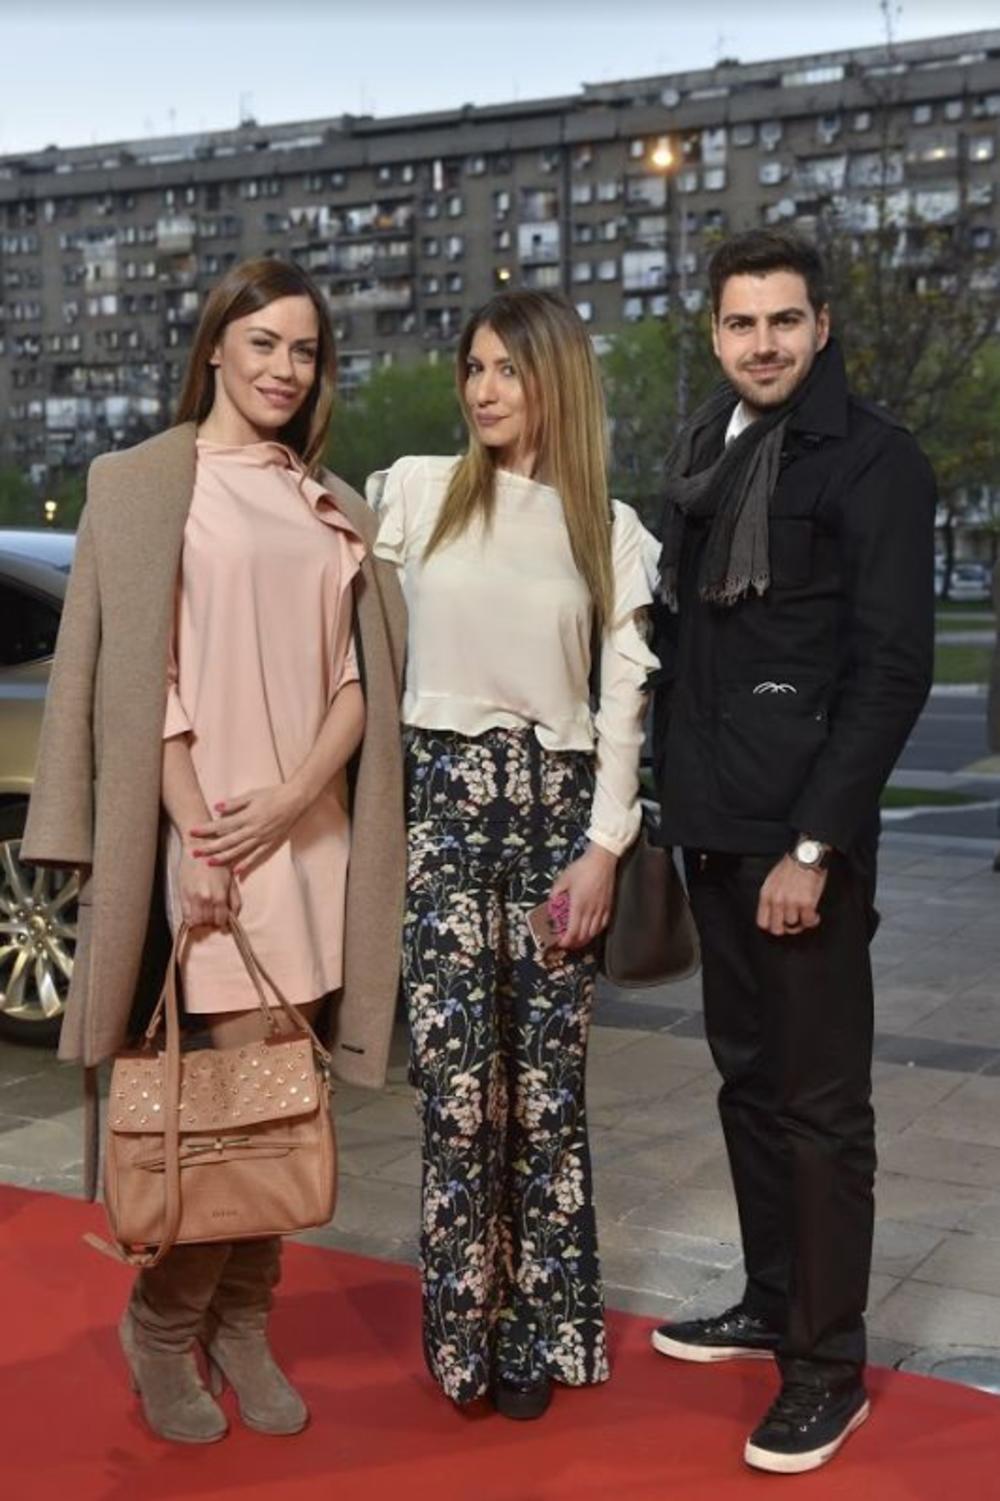 Finalnom revijom Fashion Scout SEE (Southeast Europe Fashion Showcase) konkursa na kome se takmičilo 12 dizajnera iz Hrvatske, Slovenije, Makedonije i Srbije svečano je otvoren 41. Belgrade Fashion Week!